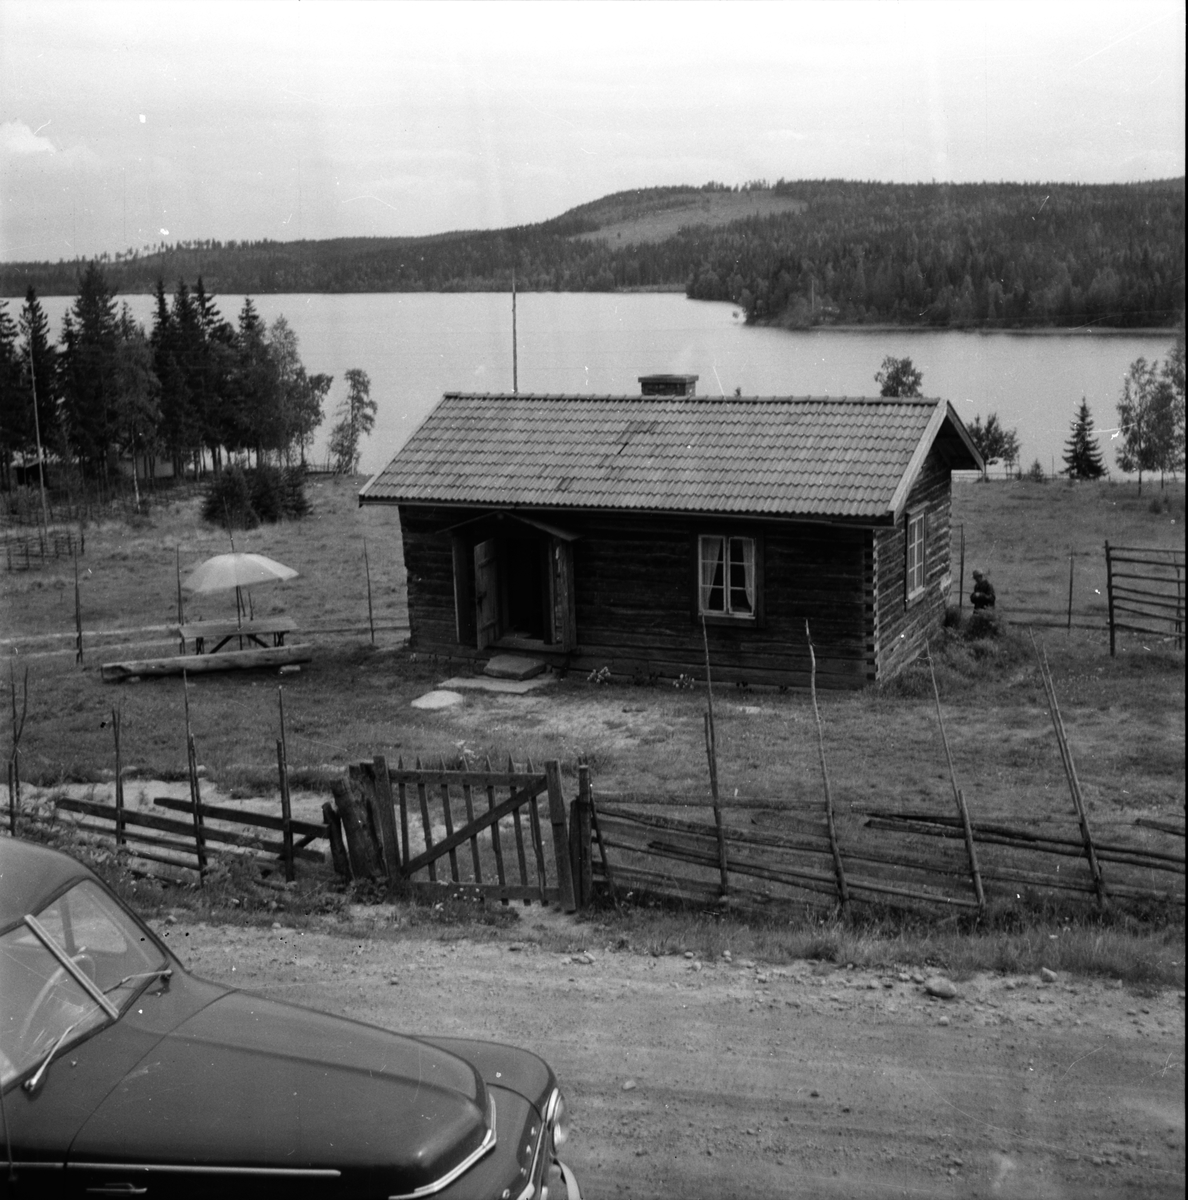 Harsen,
Järvsö,
8 Augusti 1960